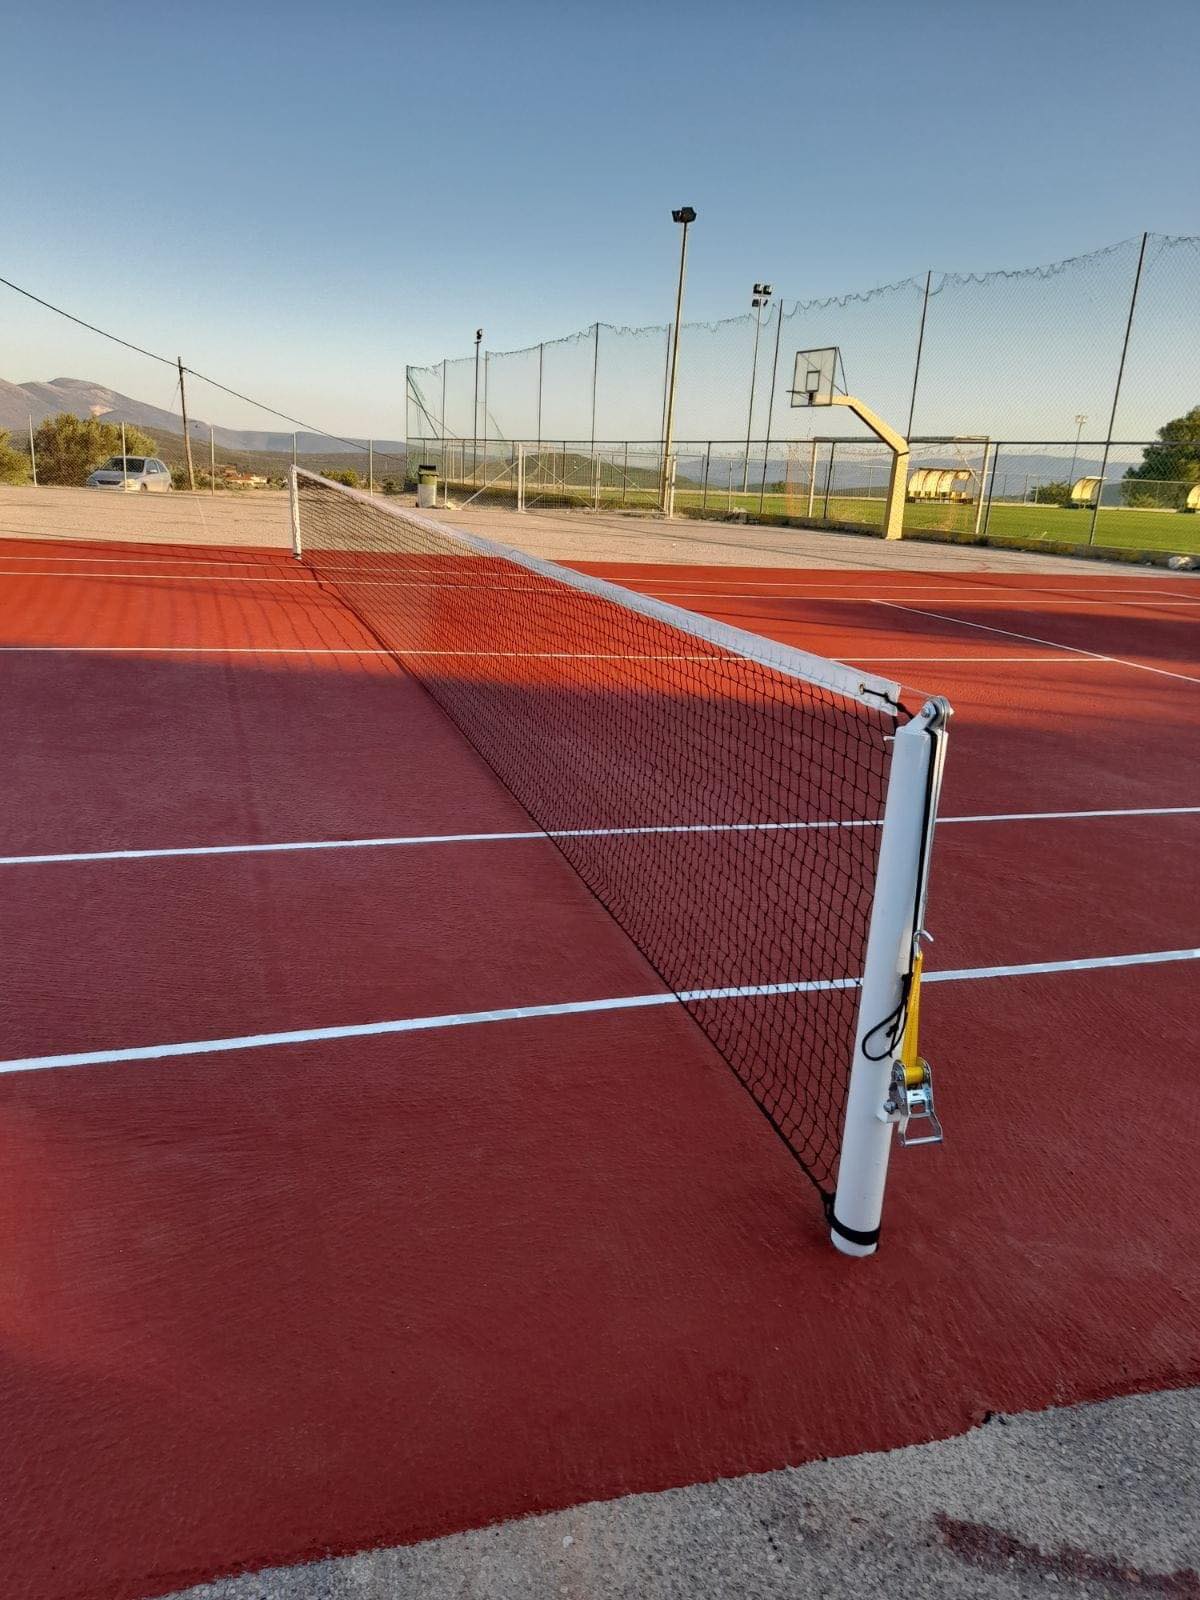 Εύβοια: Ο Πολιτιστικός Σύλλογος Αγίου Ιωάννη έφτιαξε γήπεδο τένις στη μνήμη του Λεωνίδα Βογιατζή